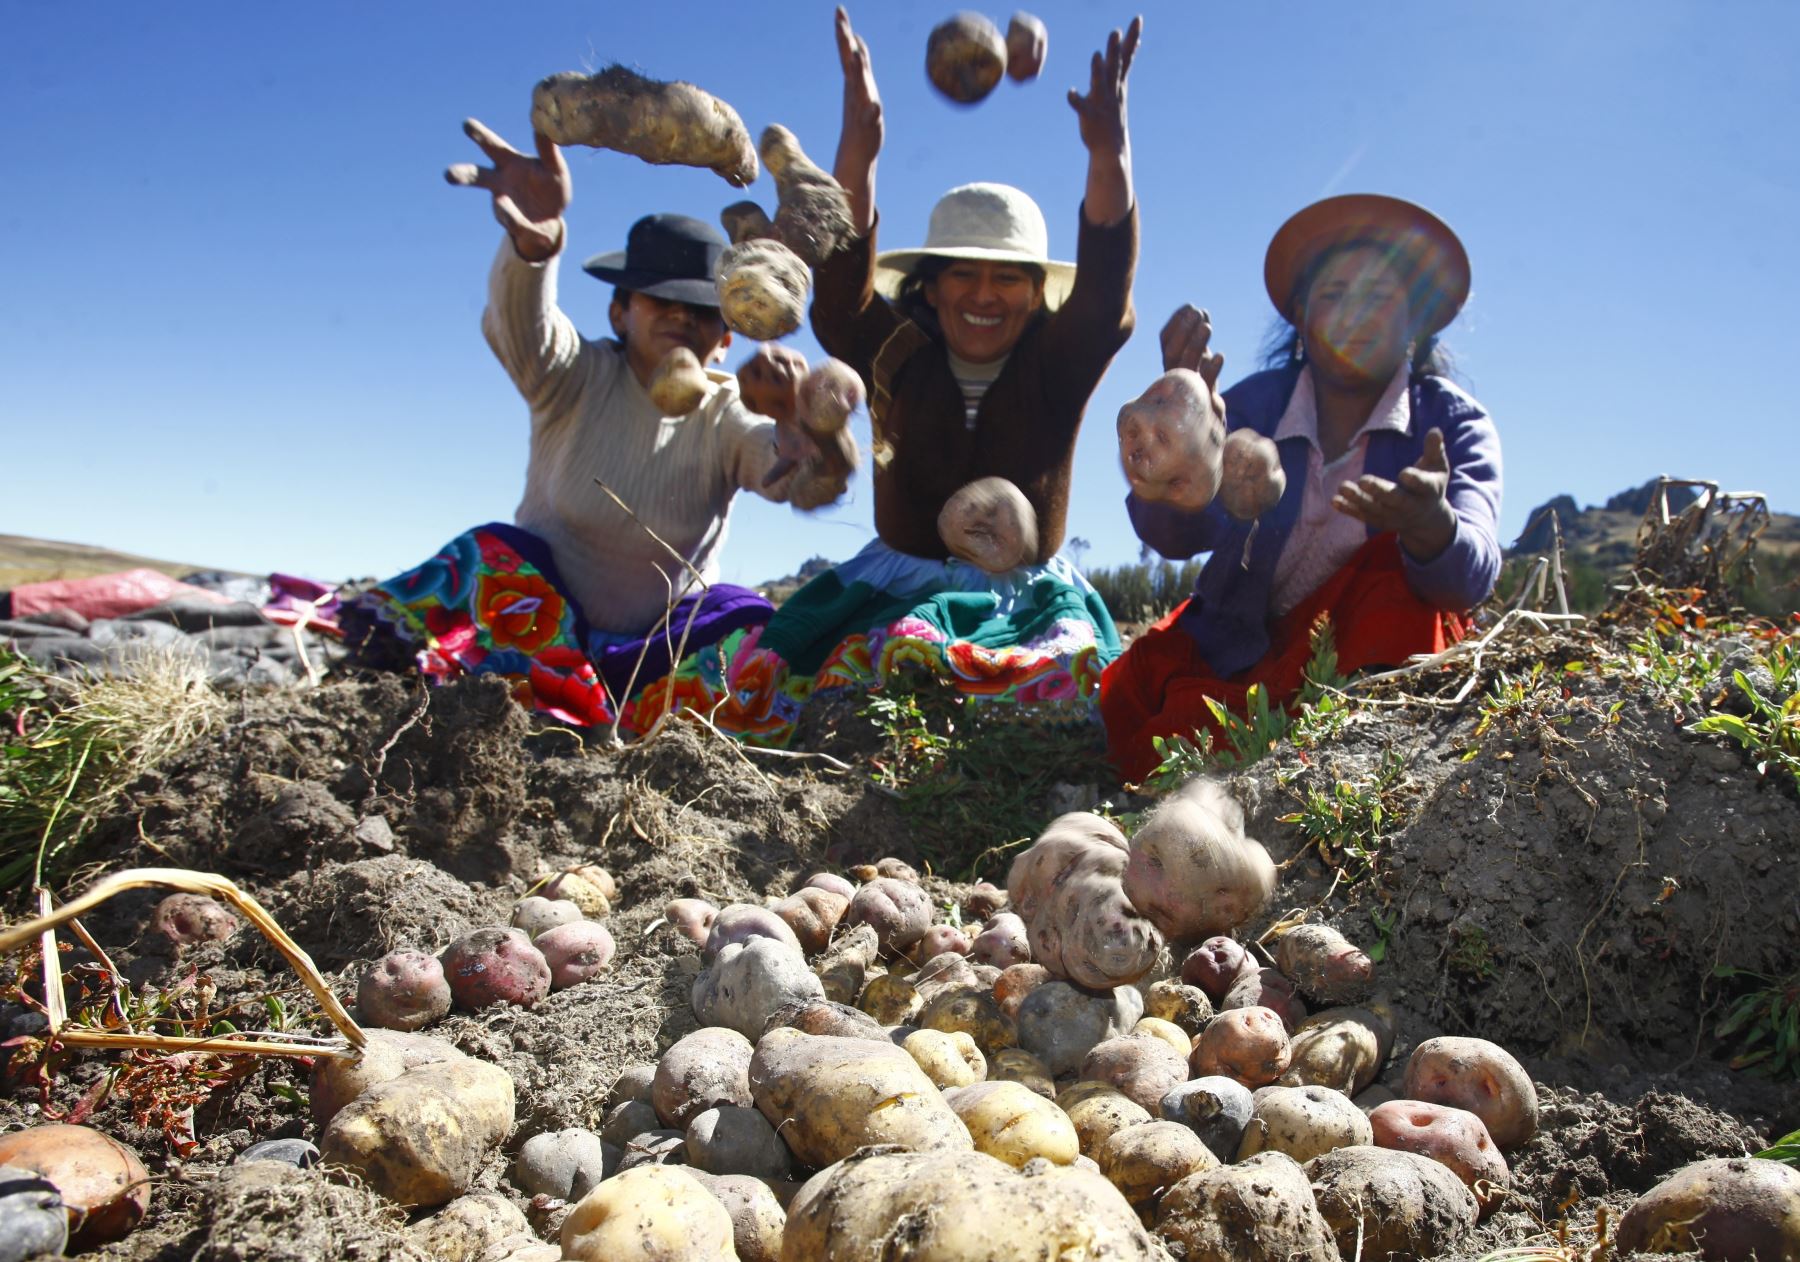 El Perú es uno de los 22 países del planeta que forma parte del programa “Sistemas Importantes del Patrimonio Agrícola Mundial” (SIPAM), destacó la Organización de las Naciones Unidas para la Alimentación y la Agricultura (FAO). ANDINA/Difusión